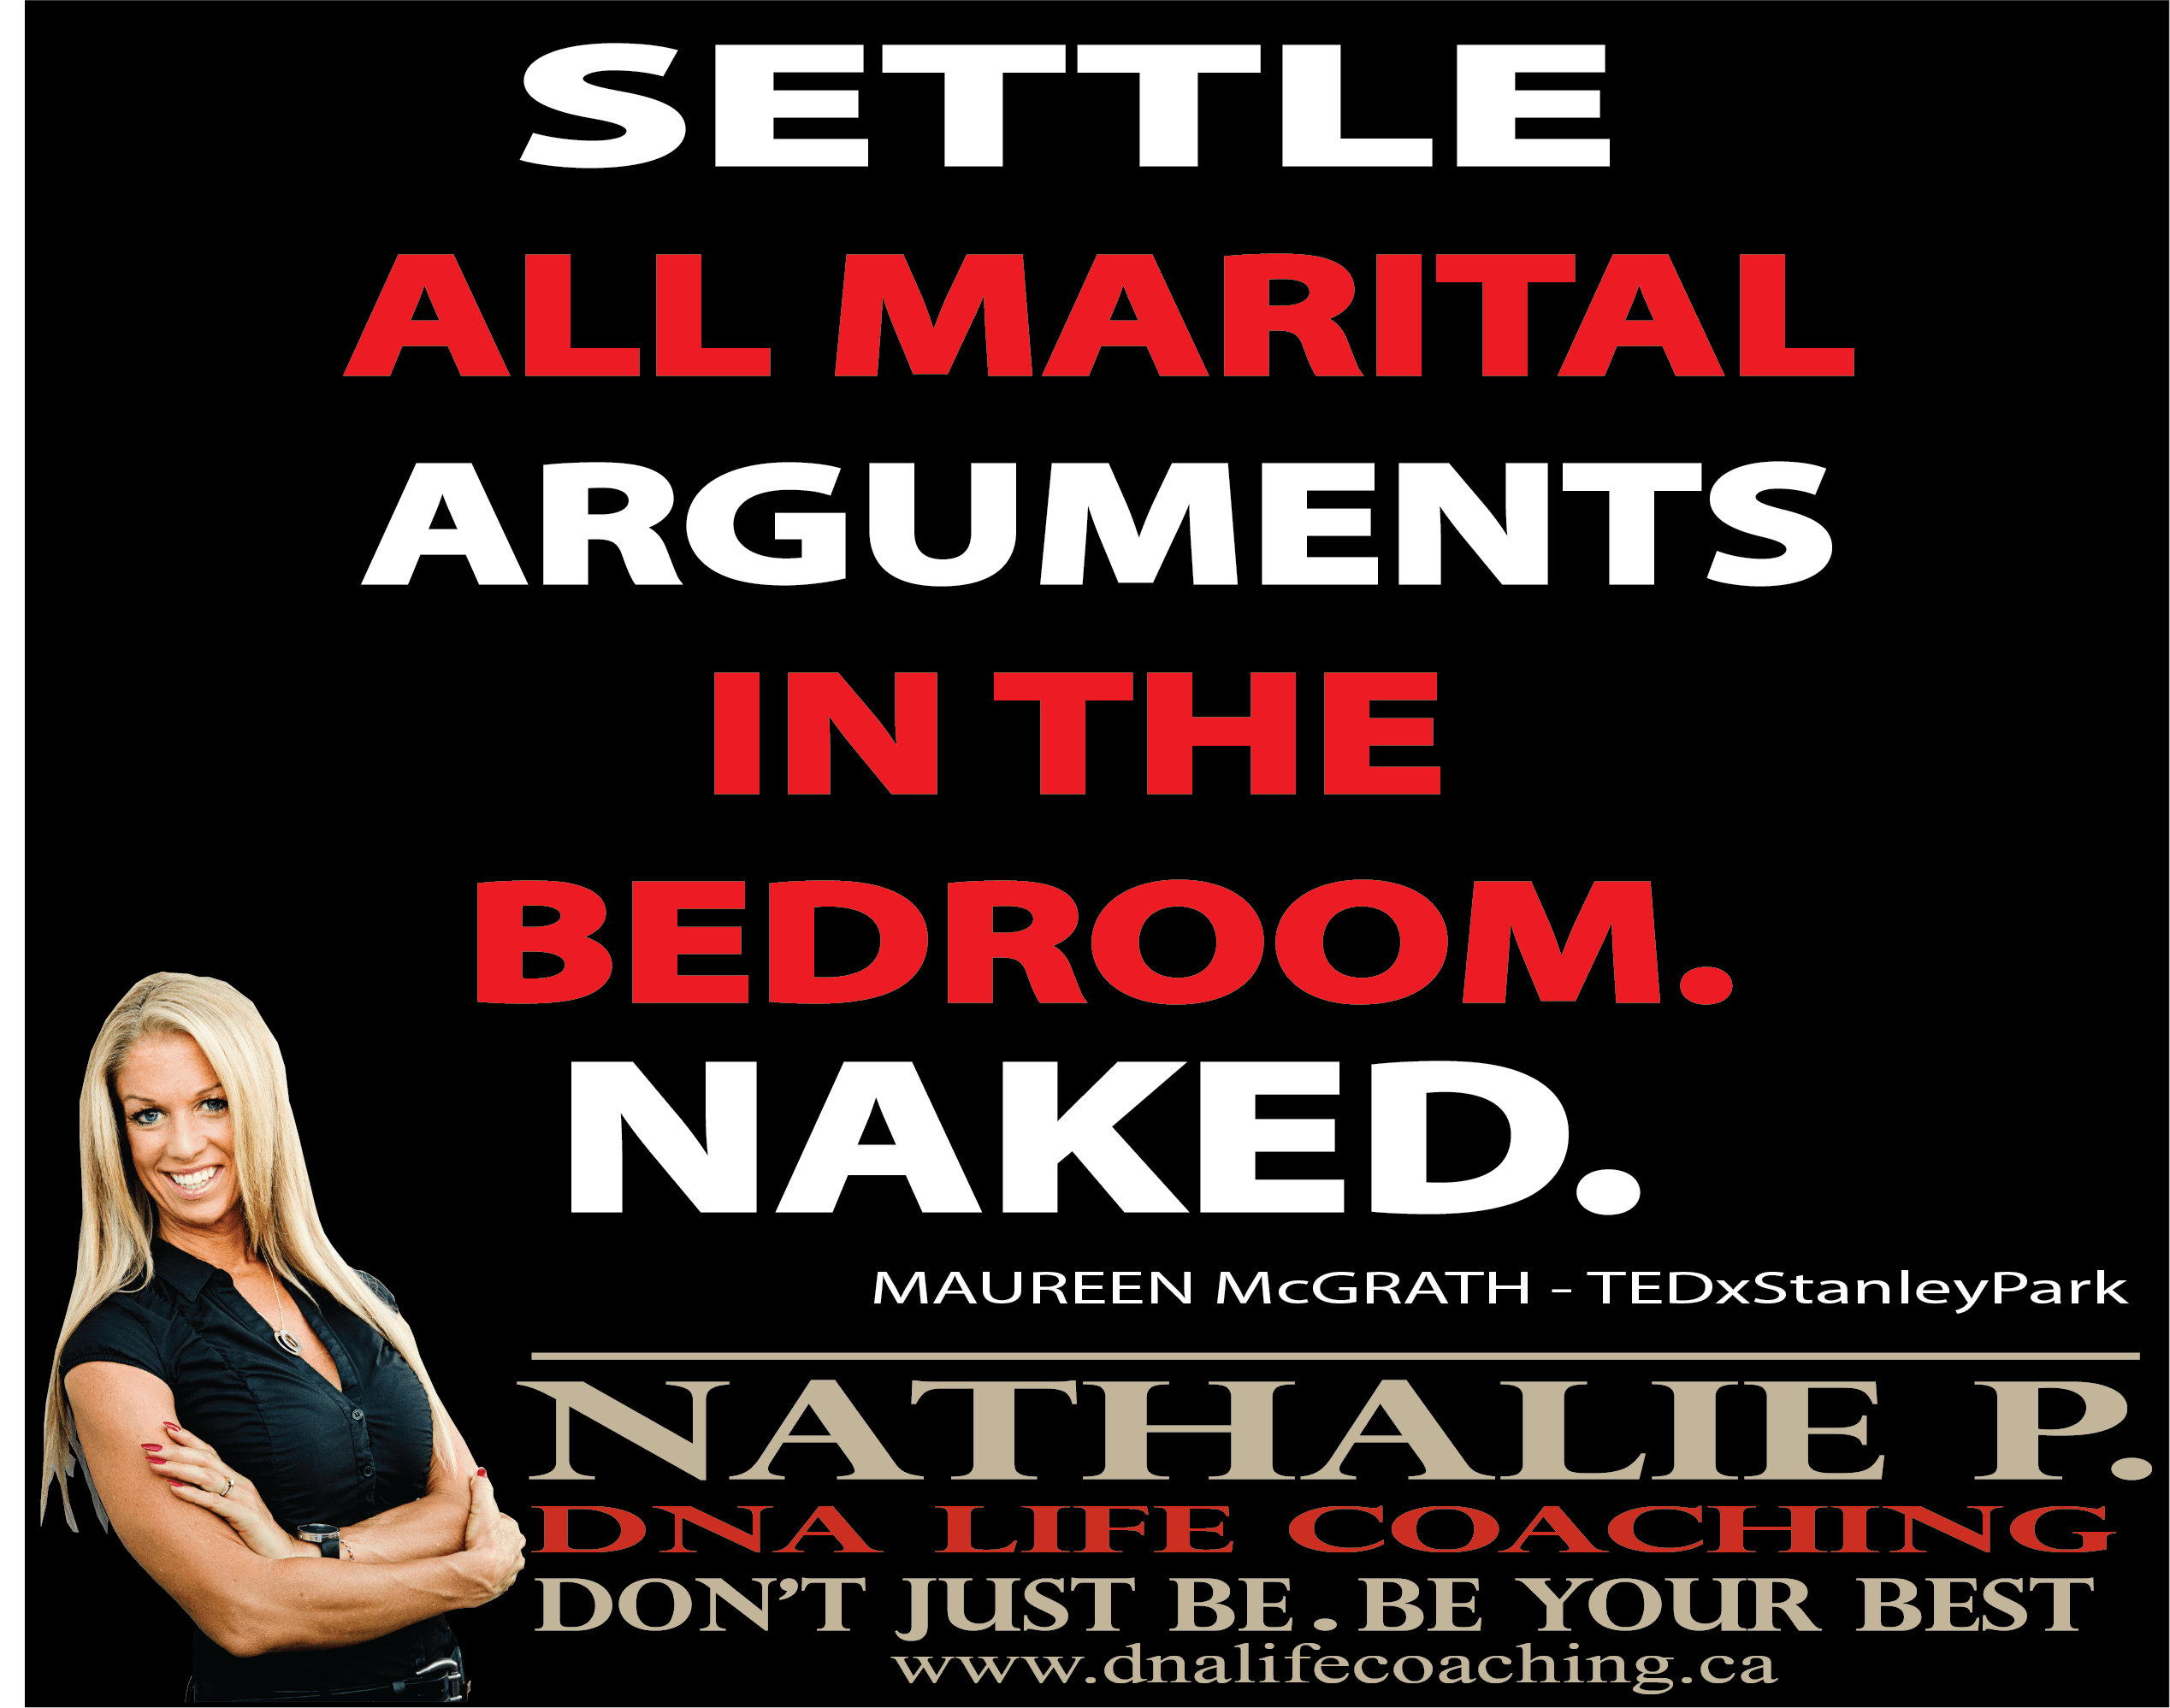 Marital arguments bedroom naked